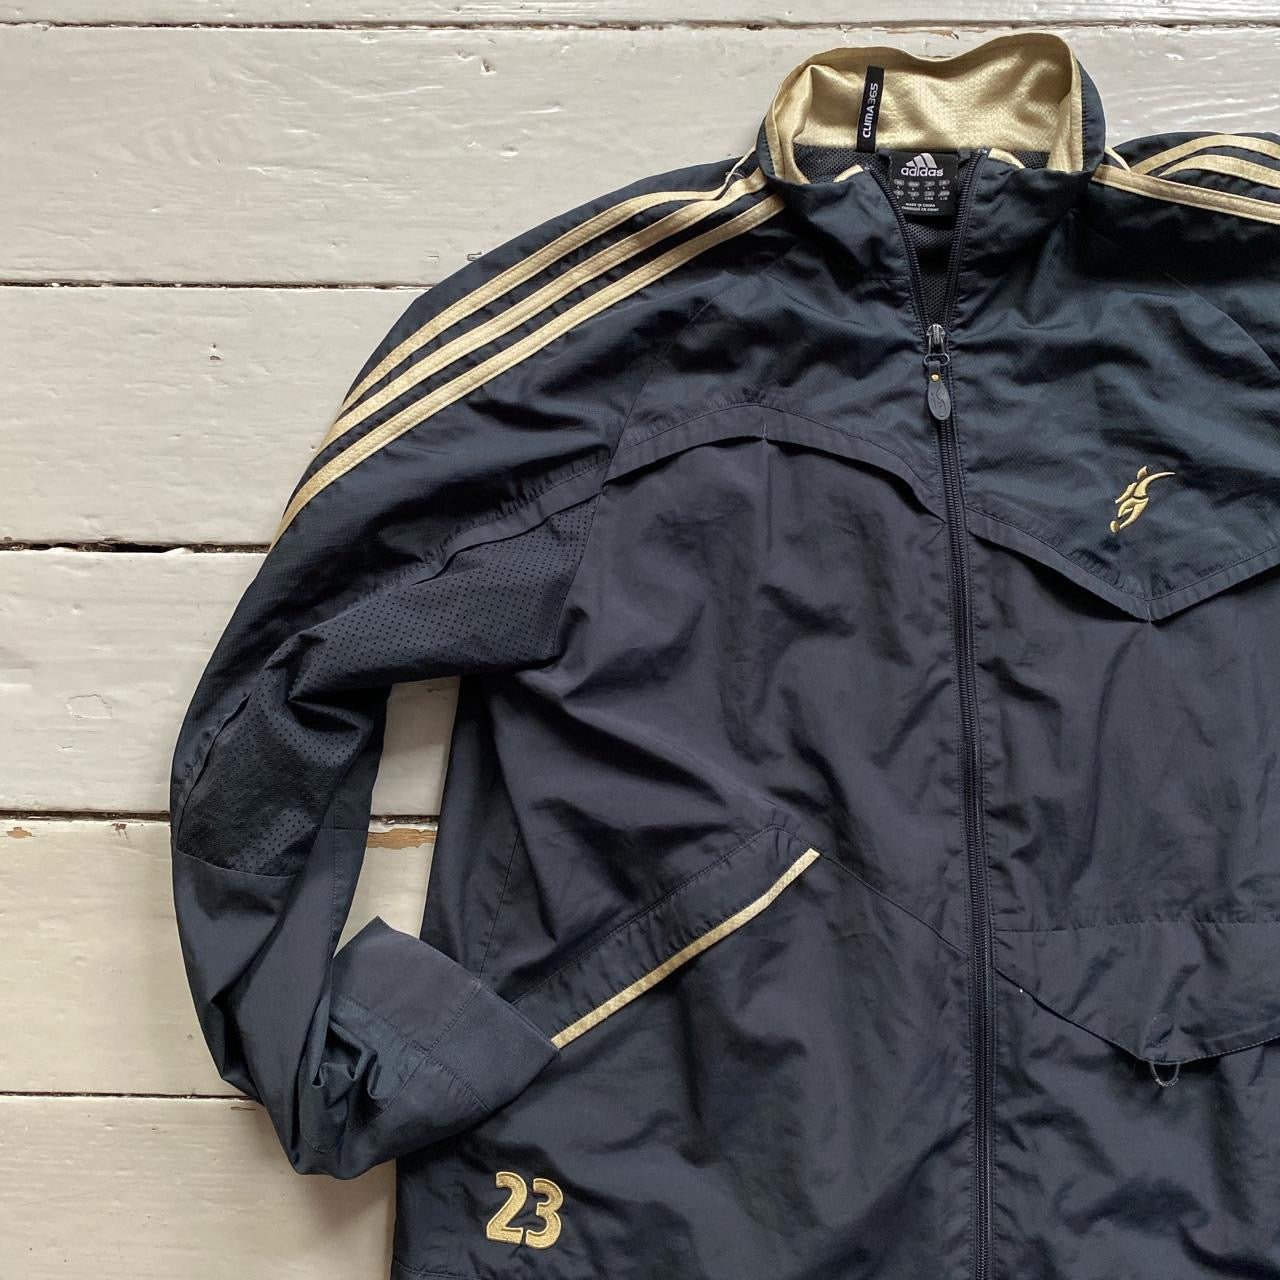 Adidas David Beckham Academy Jacket (Large)